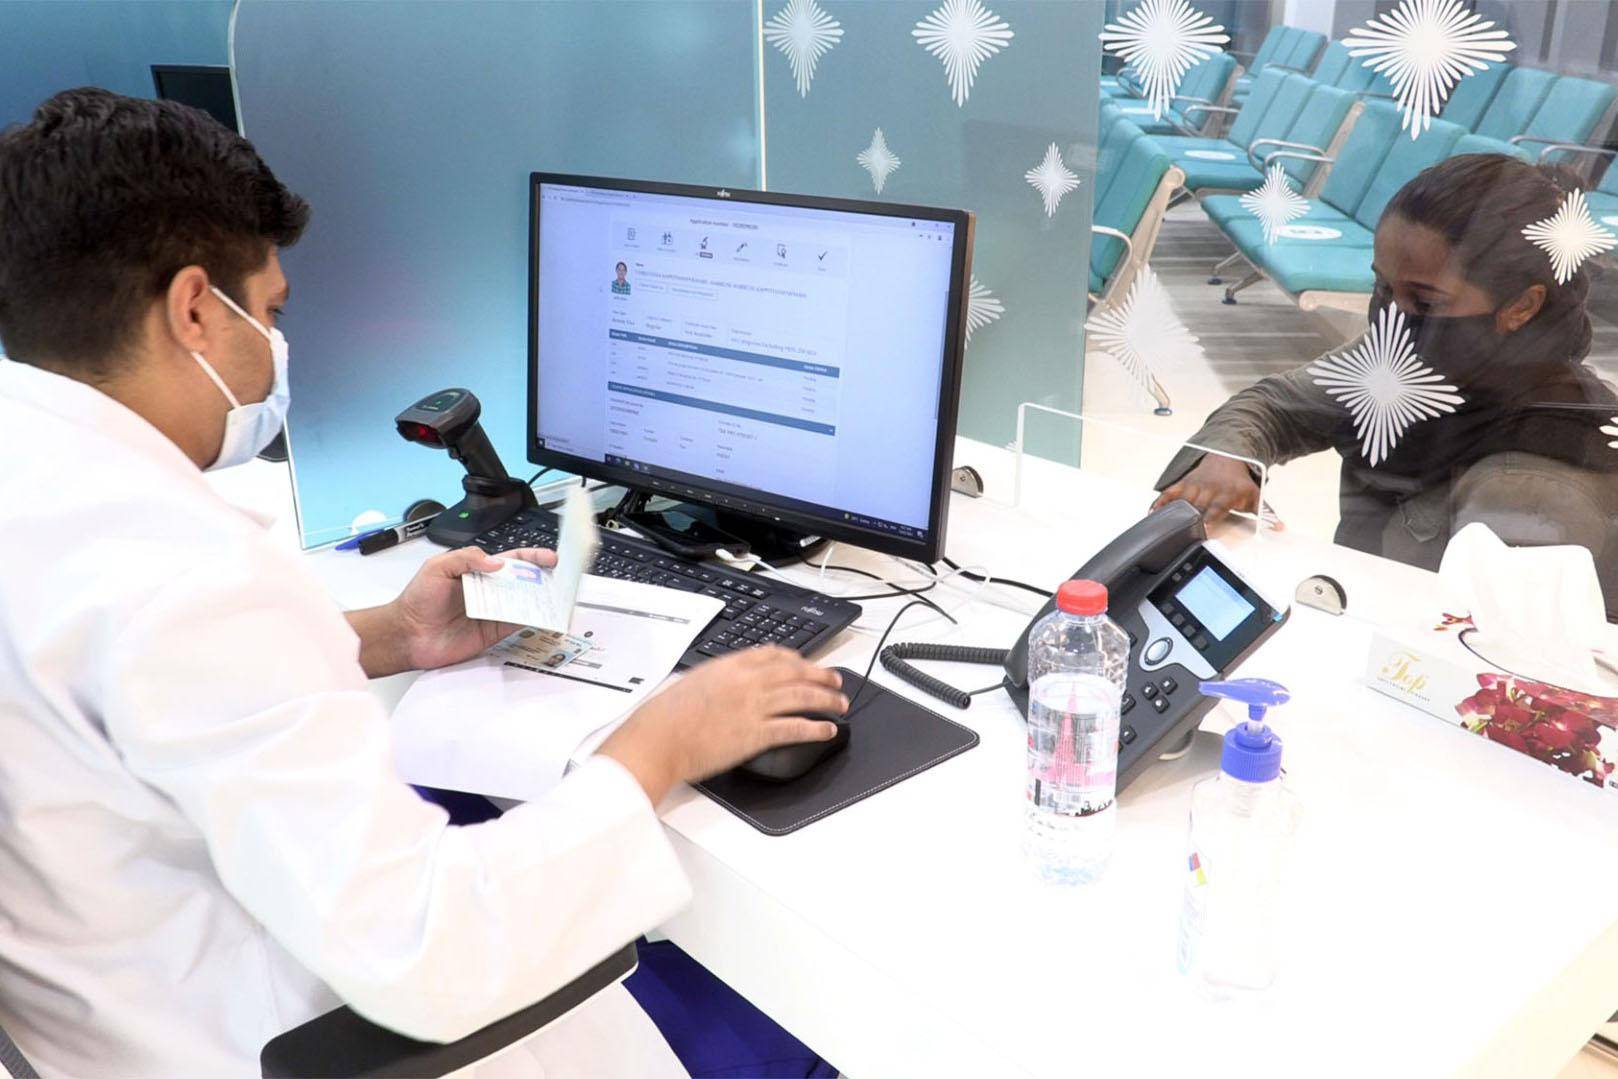 Dubai residence visa: new medical fitness center opens-News